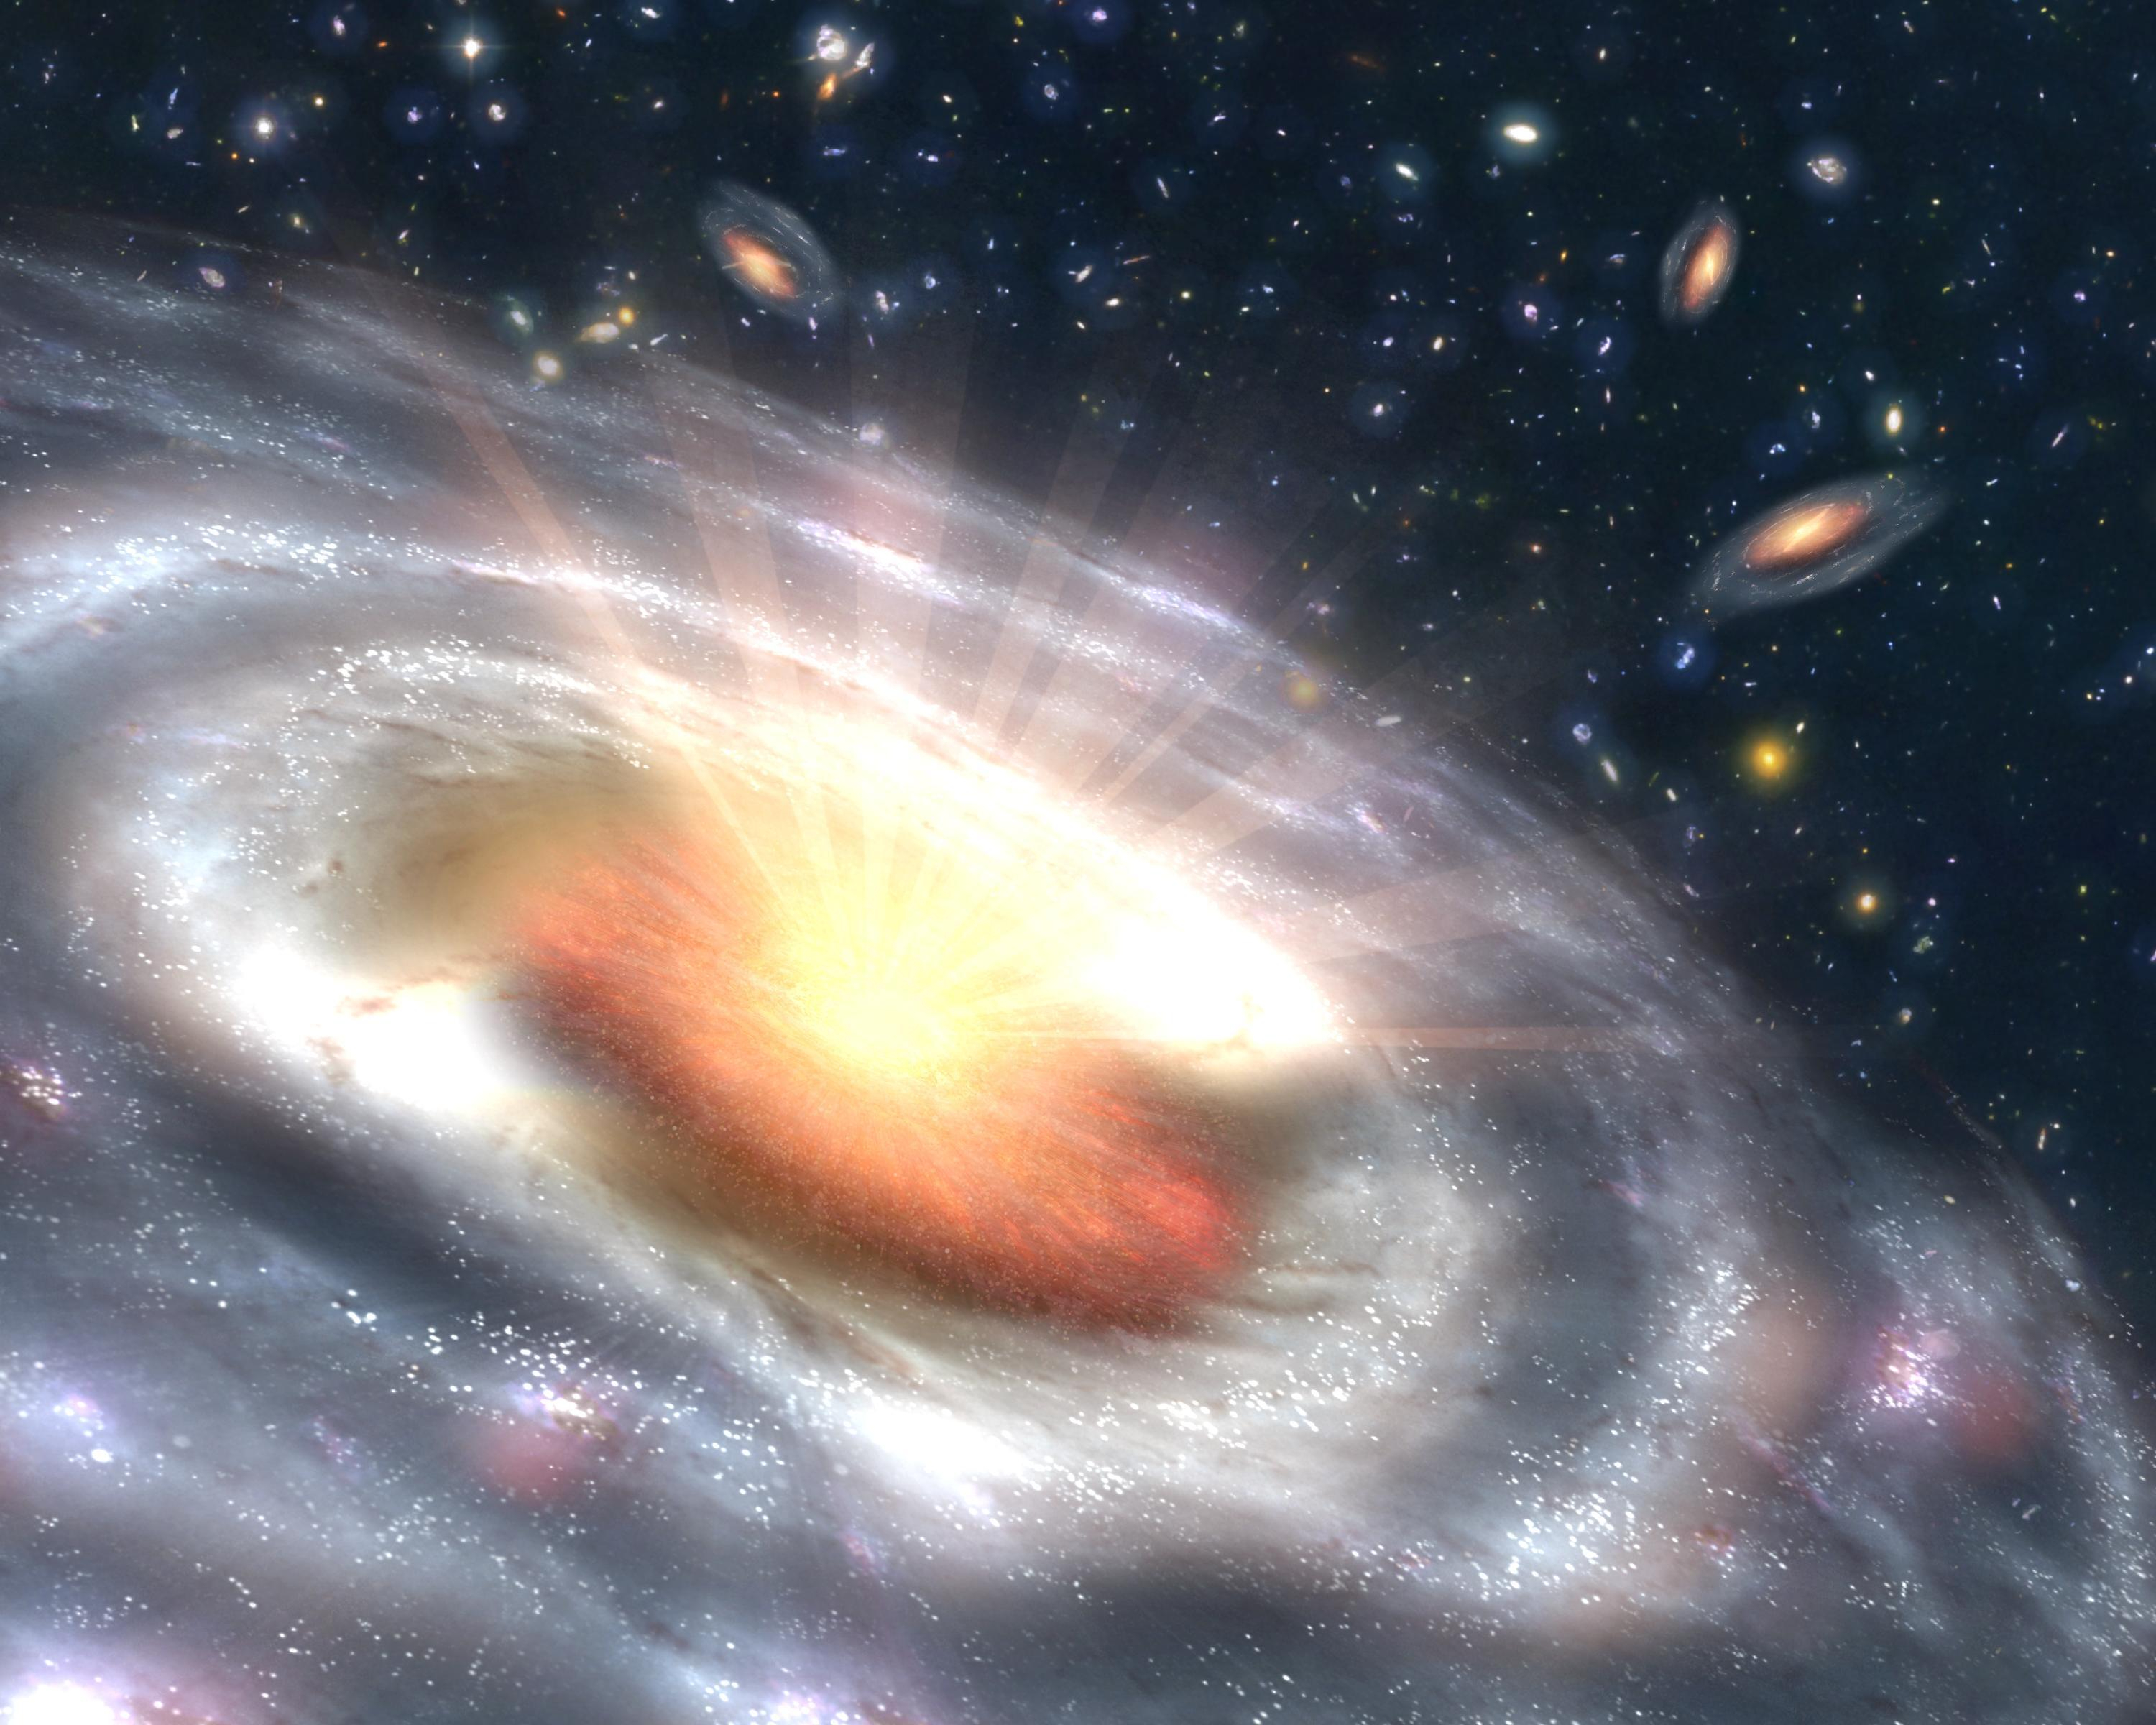 یک کهکشان در حال چرخش پرتوهای زرد را به فضای سیاه پر از کهکشان های کوچکتر دیگر می تاباند.